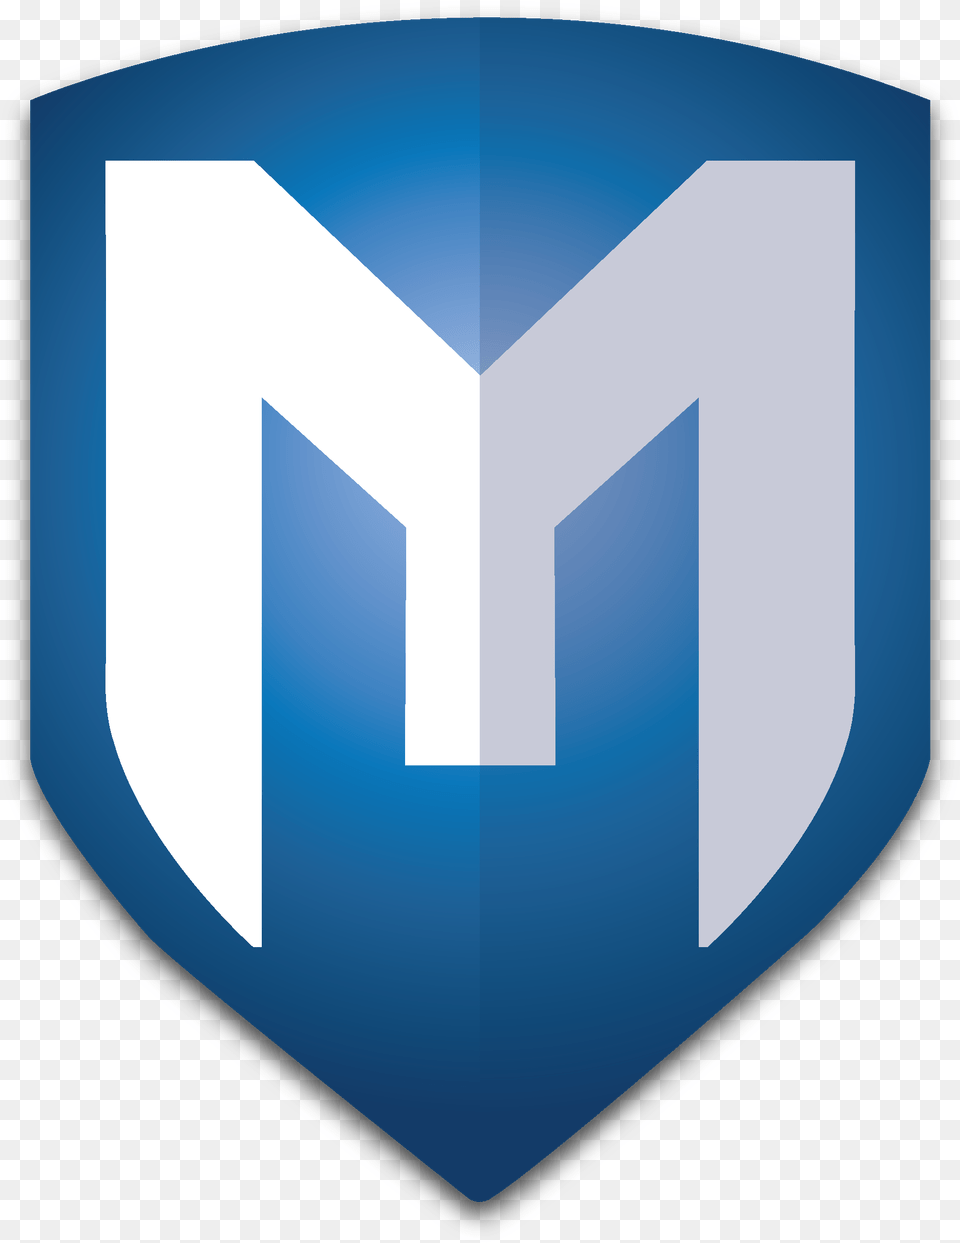 Metasploit Logo, Armor, Shield Png Image